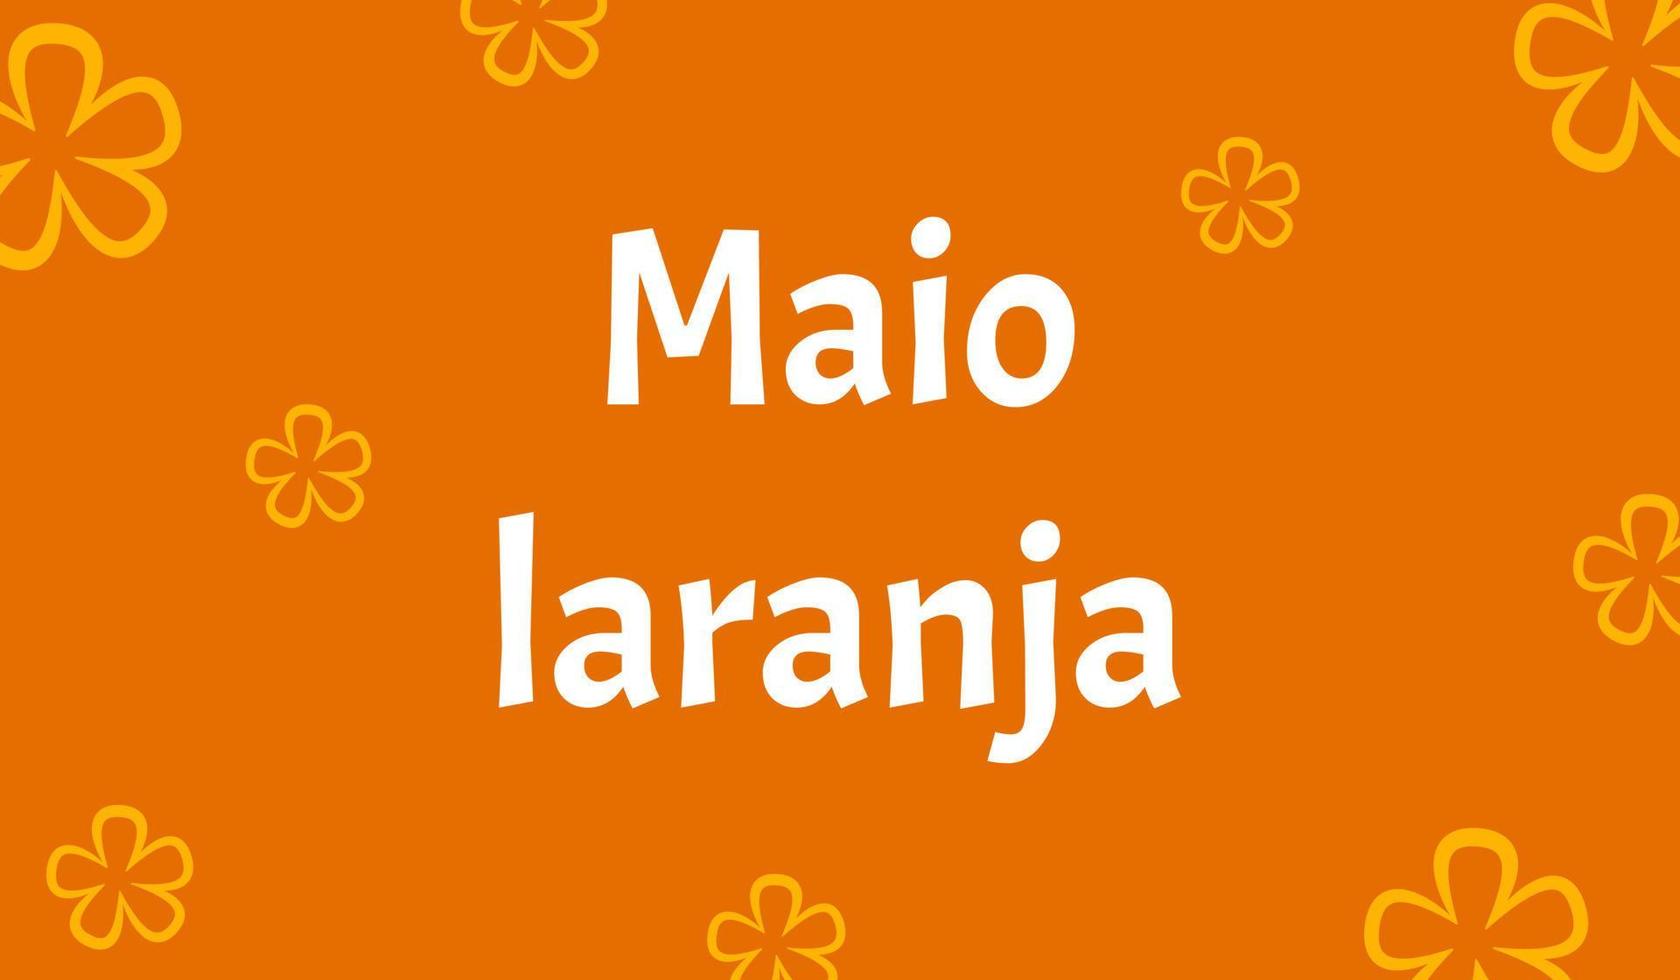 banner för maio laranja kampanj mot våld forskning av barn. skrivet på portugisiska. vektor